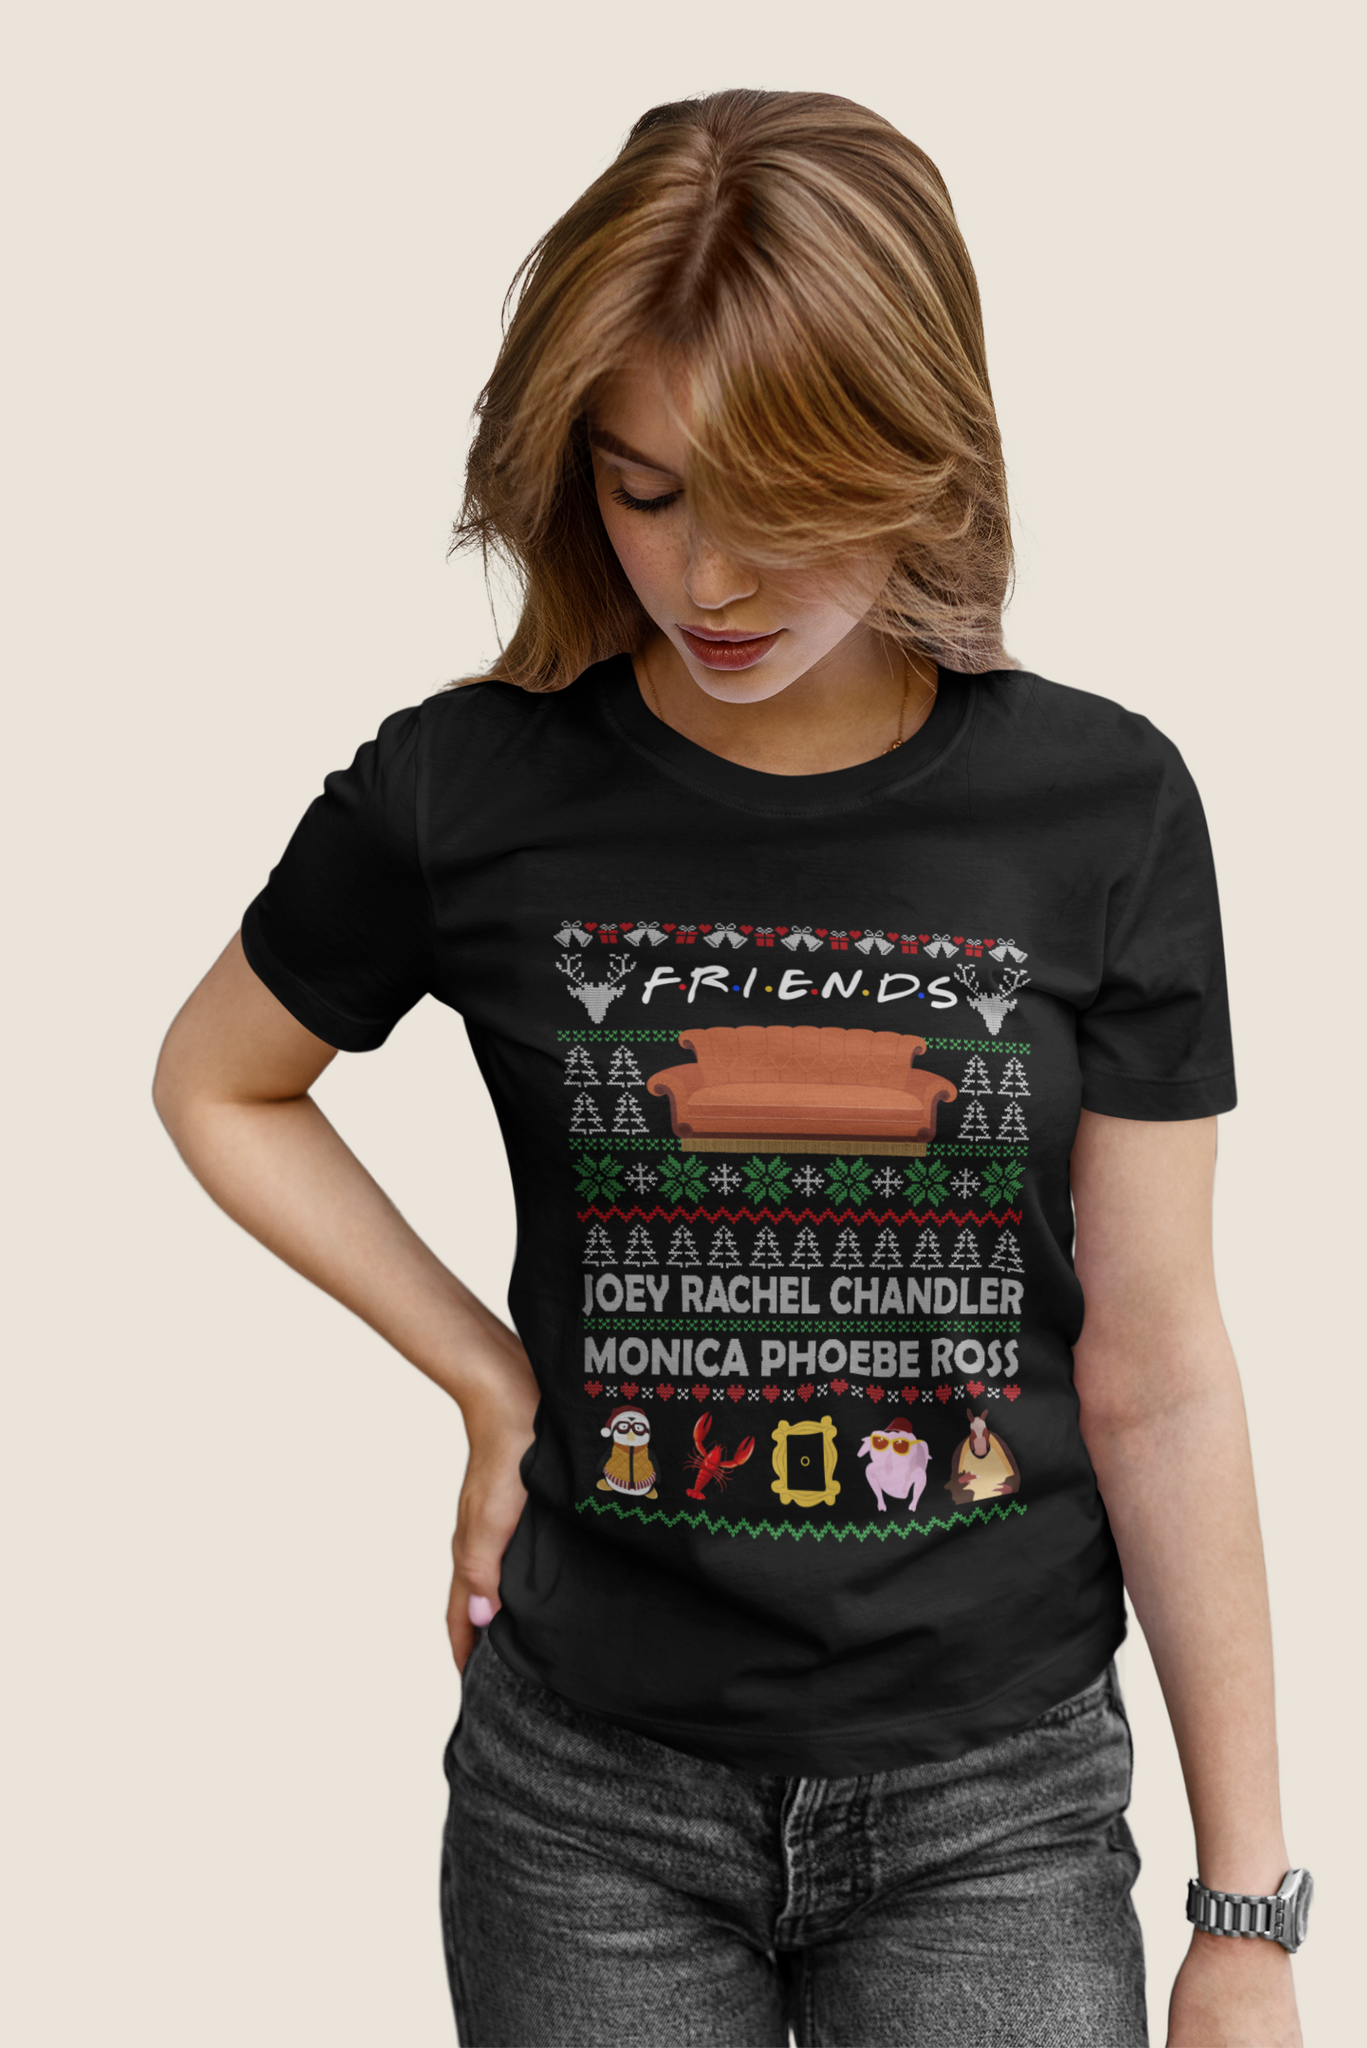 Friends TV Show Ugly Sweater Shirt, Friends Shirt, Joey Rachel Chandler Monica Phoebe Ross Tshirt, Christmas Gifts